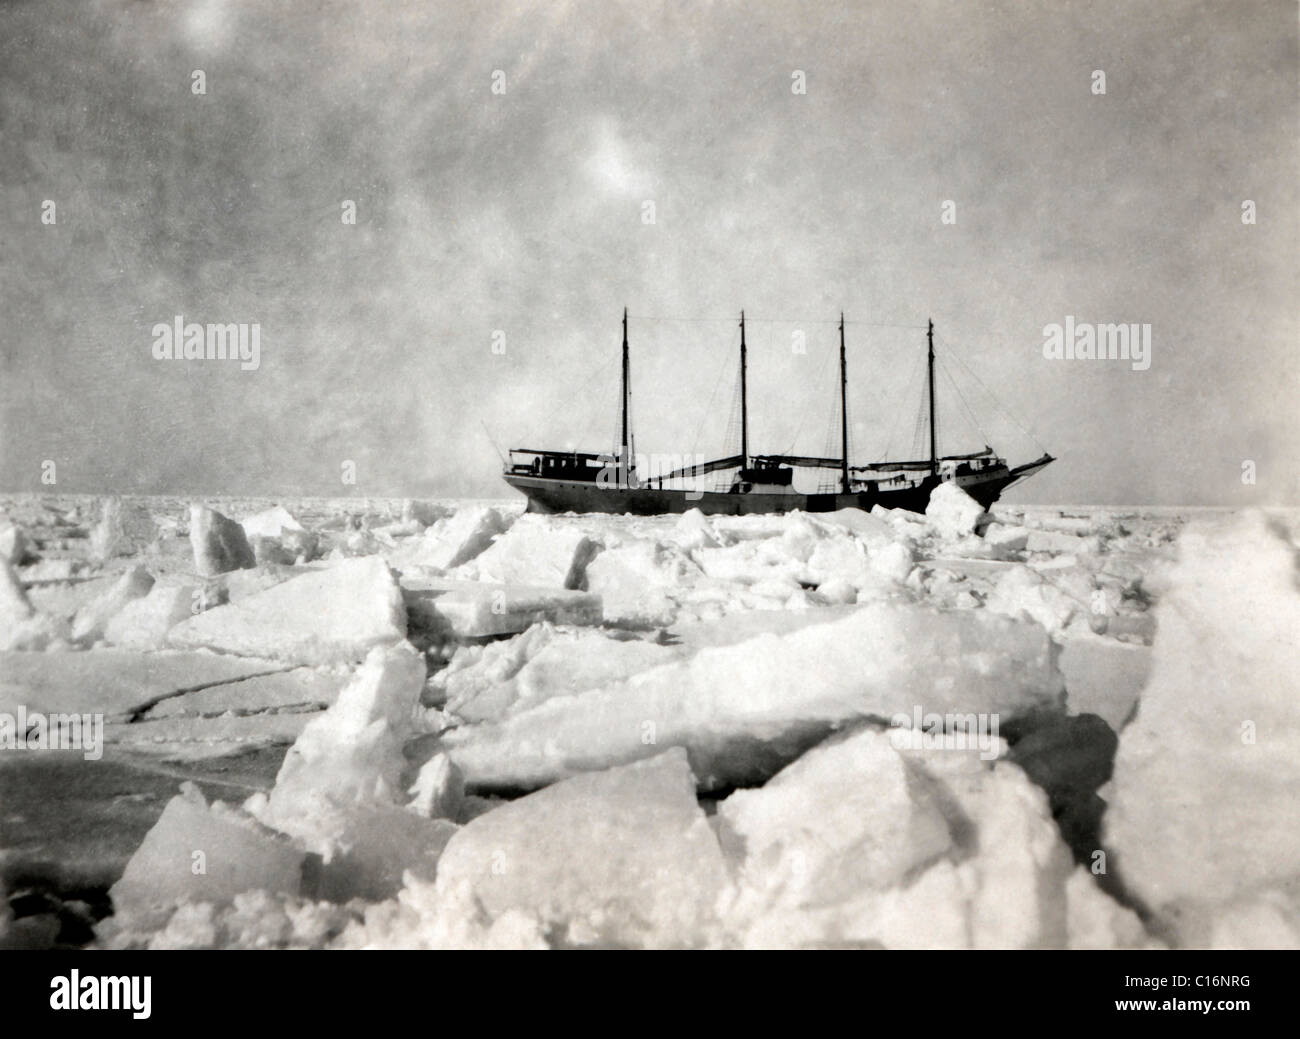 Photographie historique, sailng ship dans la glace Banque D'Images